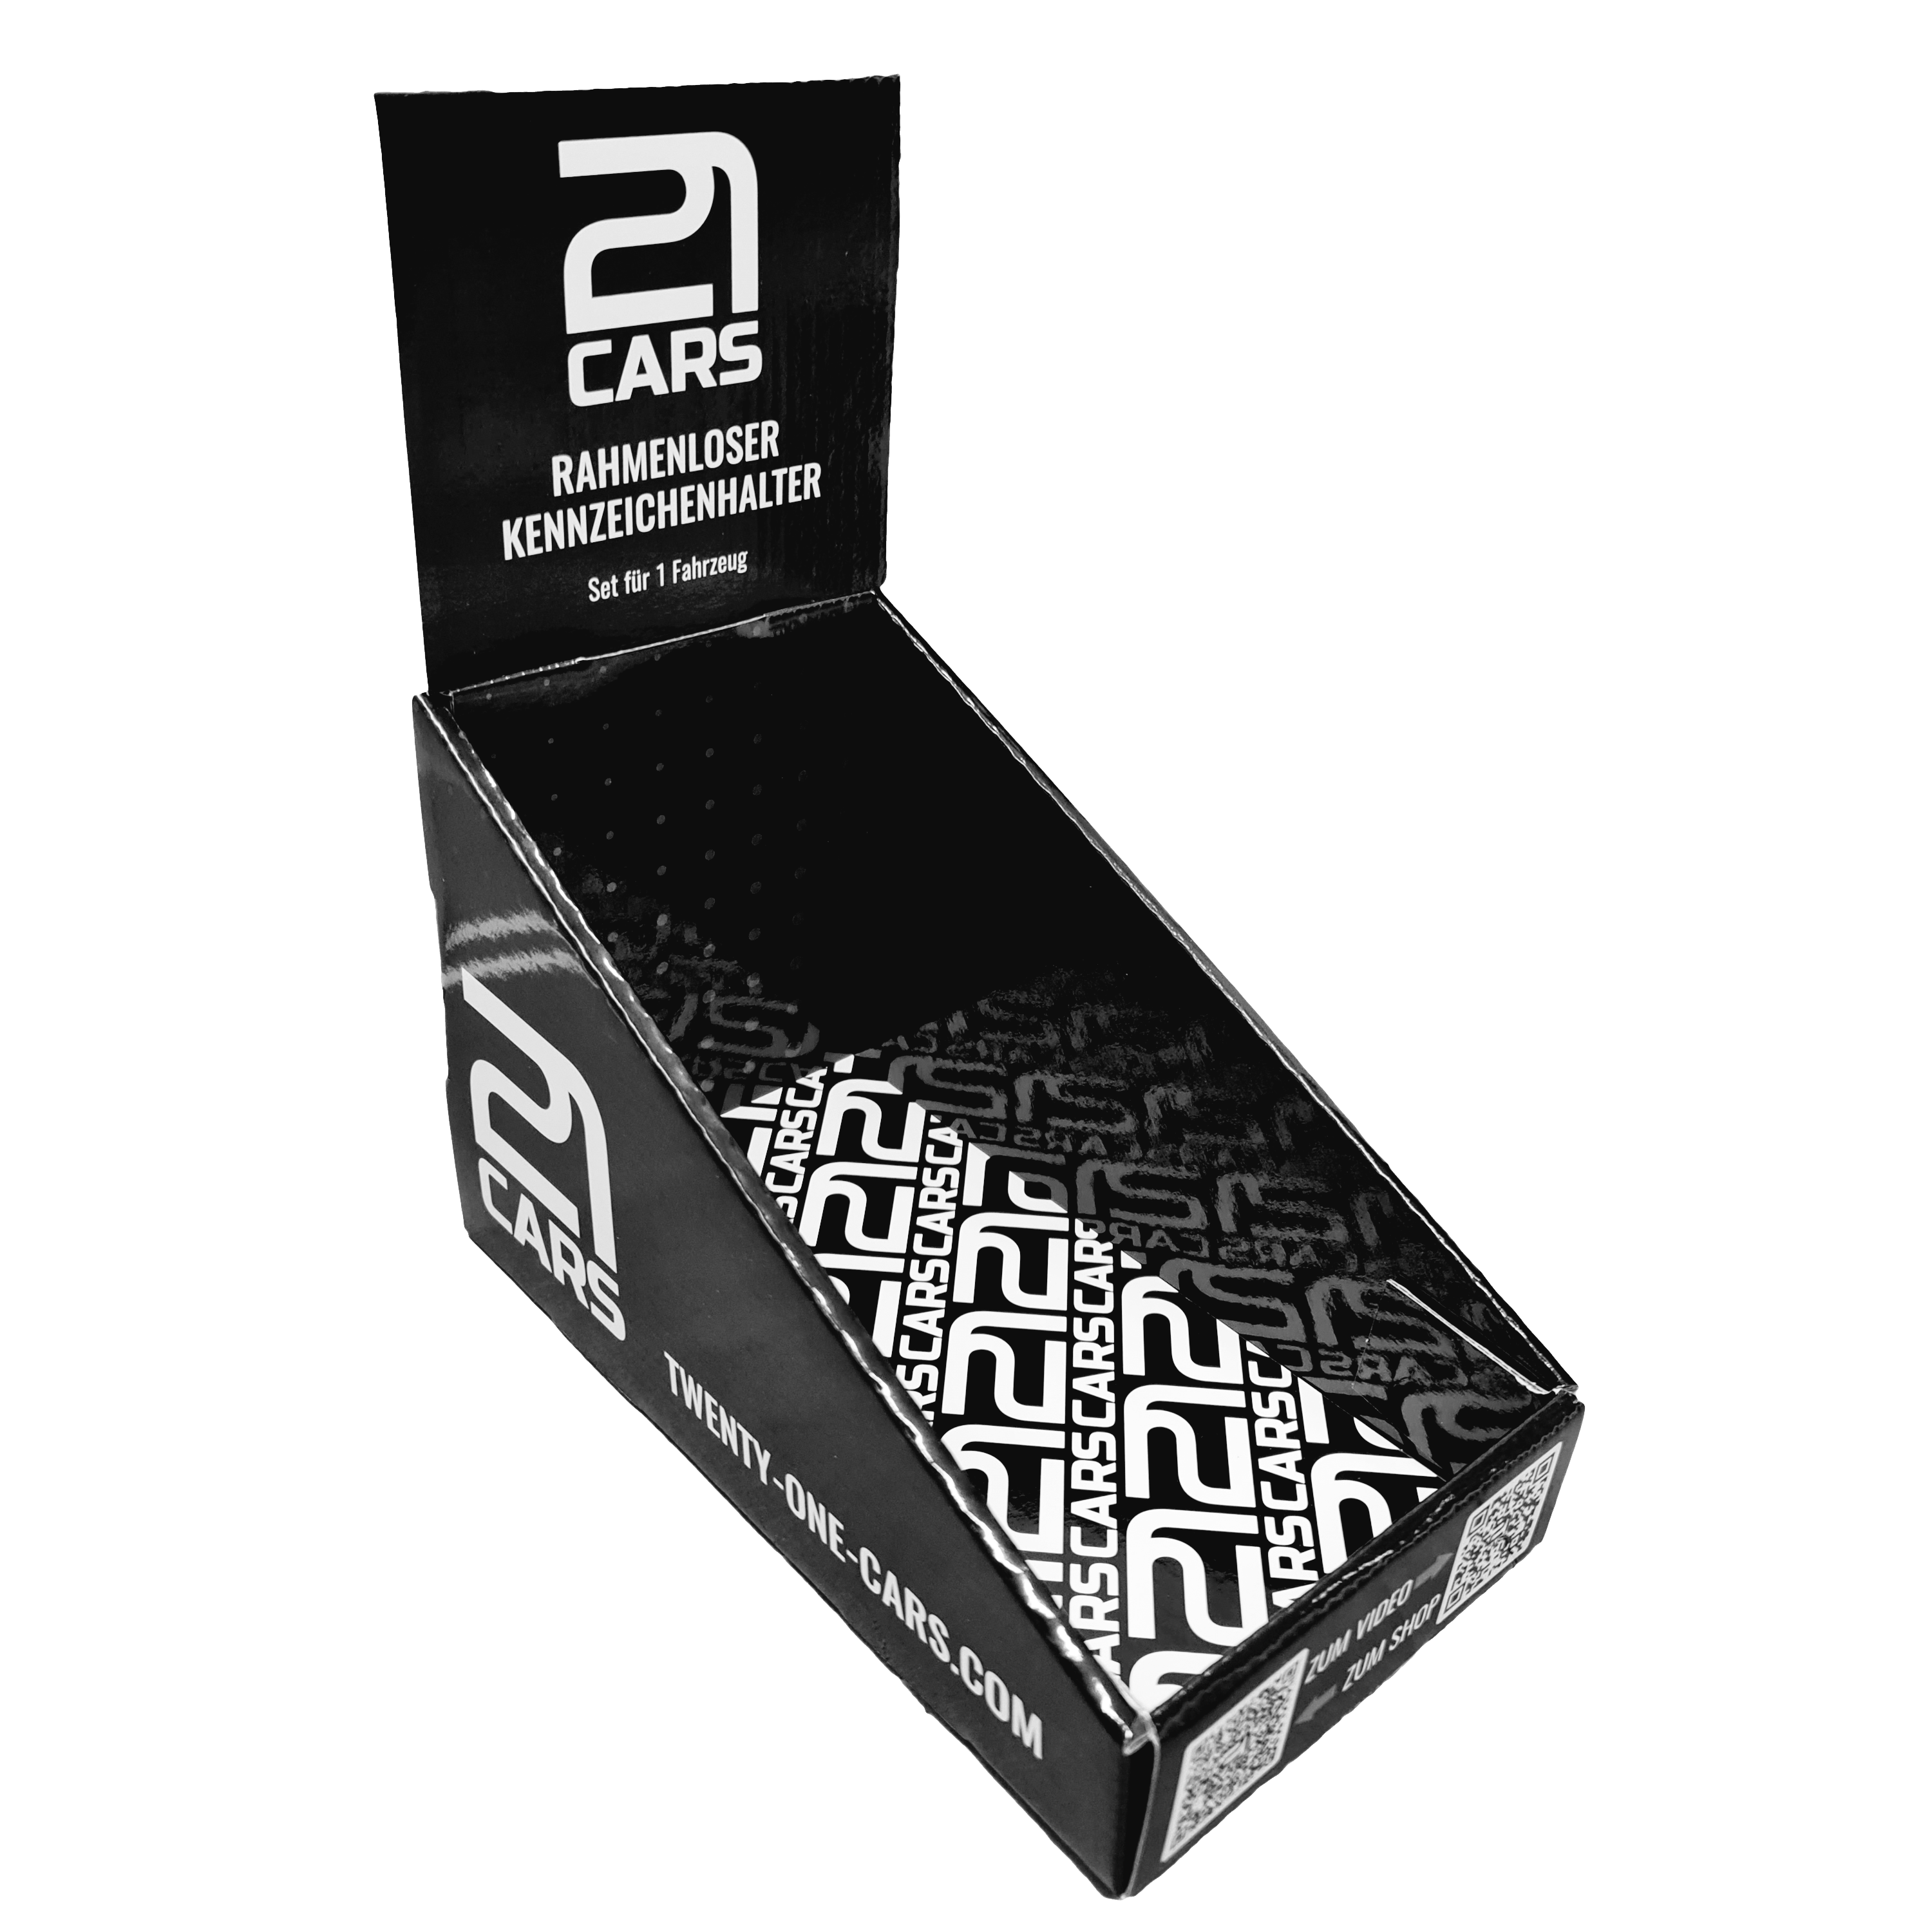 21CARS Ersatzteile Twenty One Cars Klick Kennzeichenhalter Nummernschild Händler Karton Display 